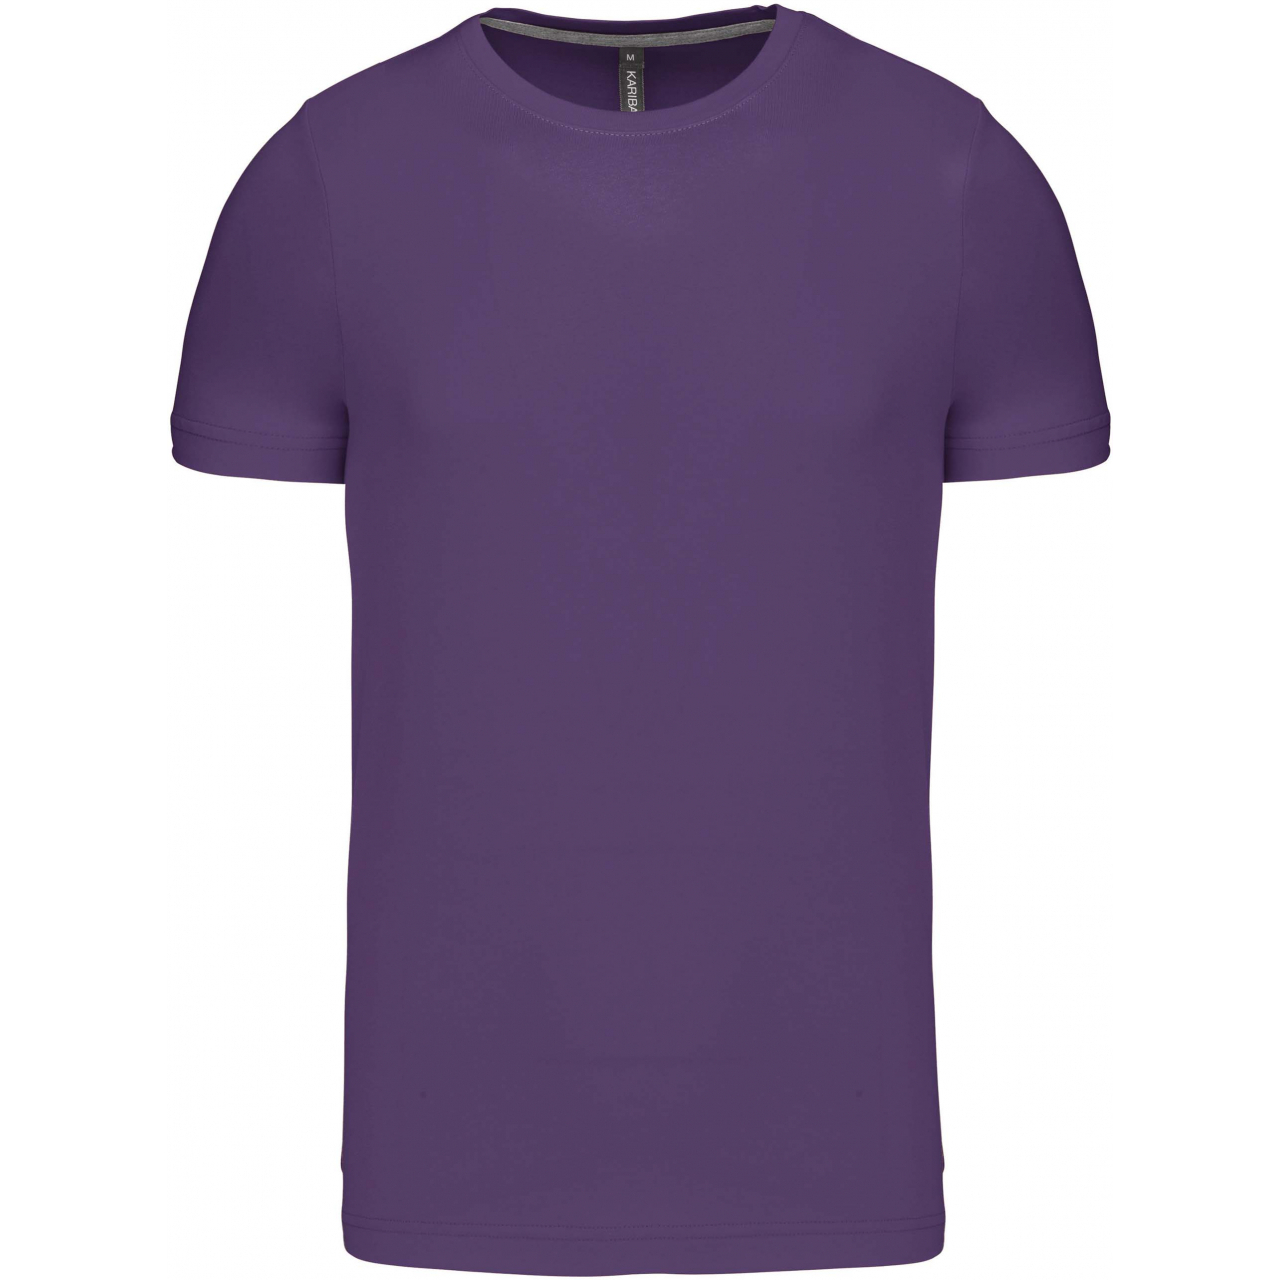 Pánské tričko Kariban krátký rukáv - fialové, L